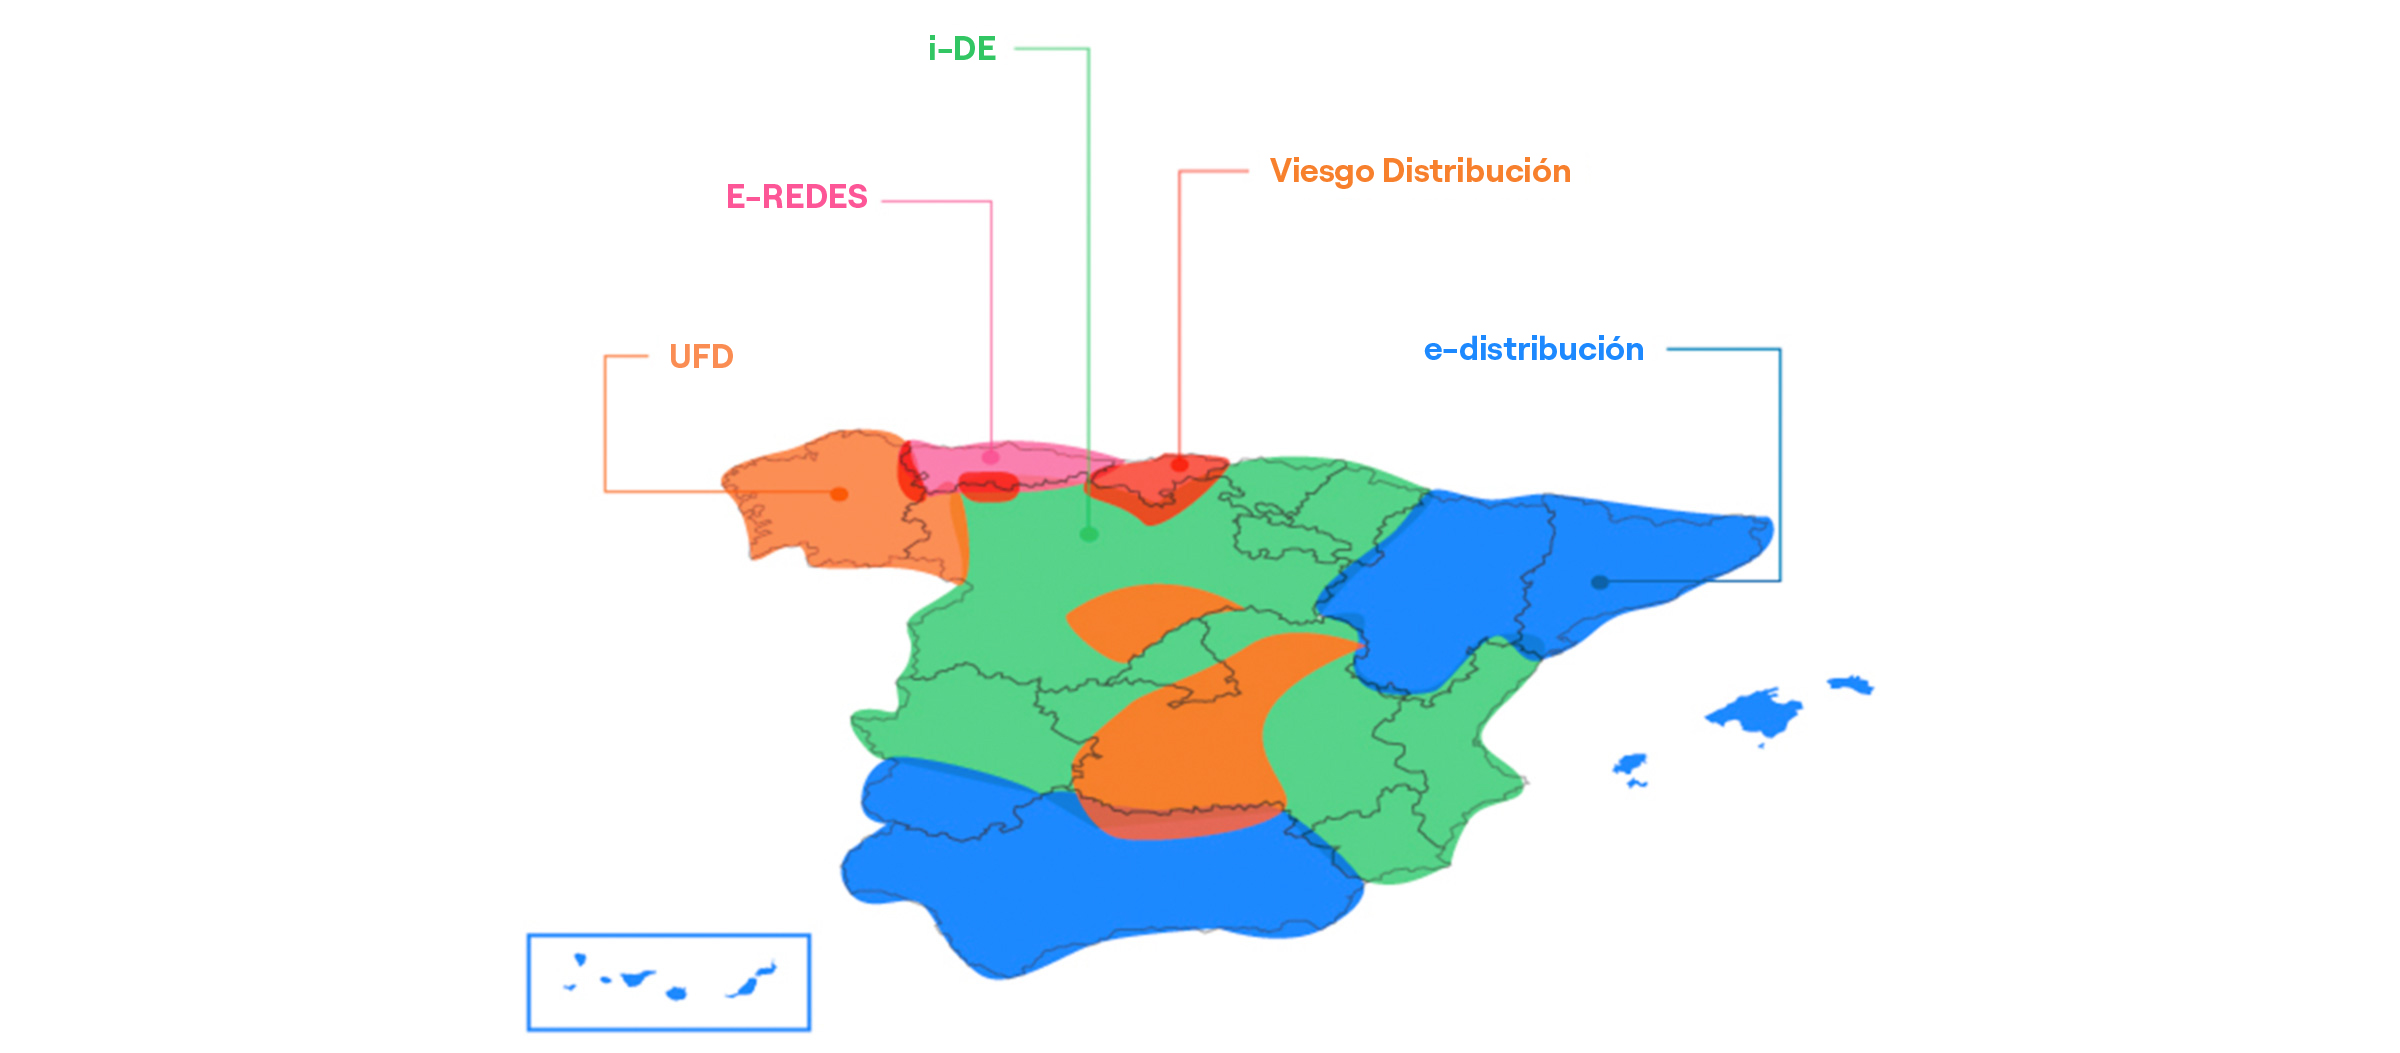 Mapa de España con las zonas correspondientes a cada distribuidora eléctrica. La información se explica a continuación en texto.